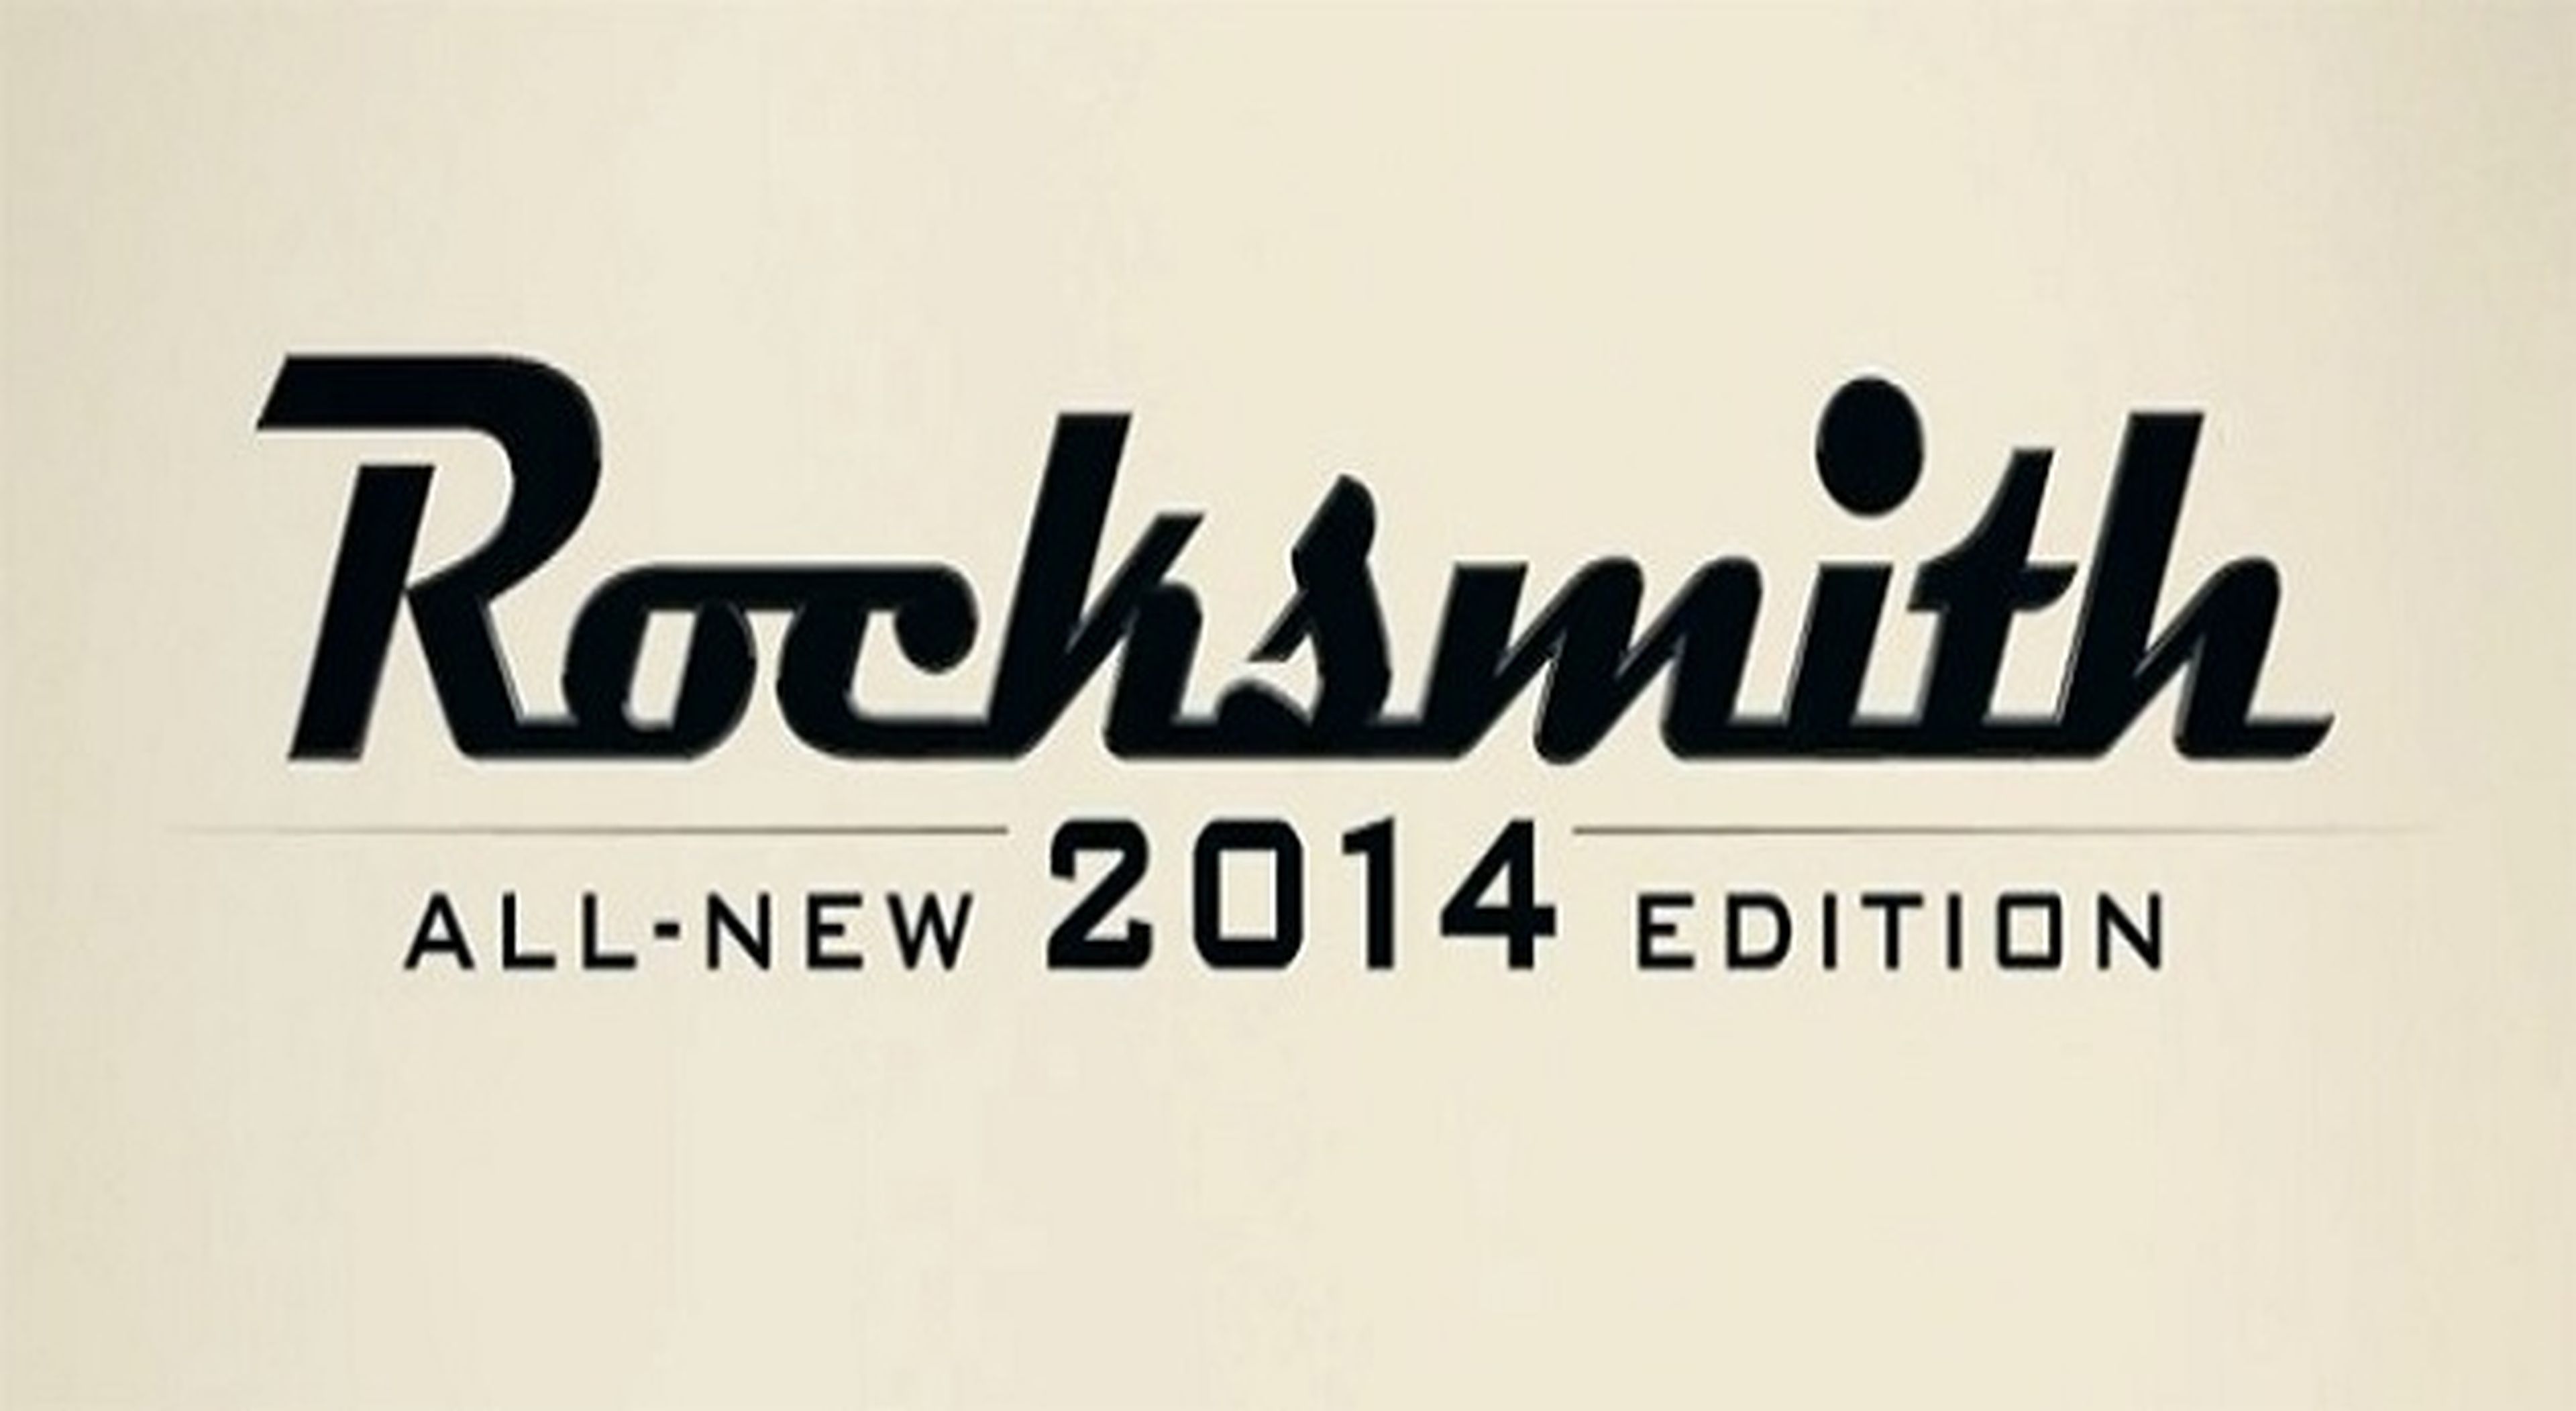 El tracklist completo de Rocksmith 2014